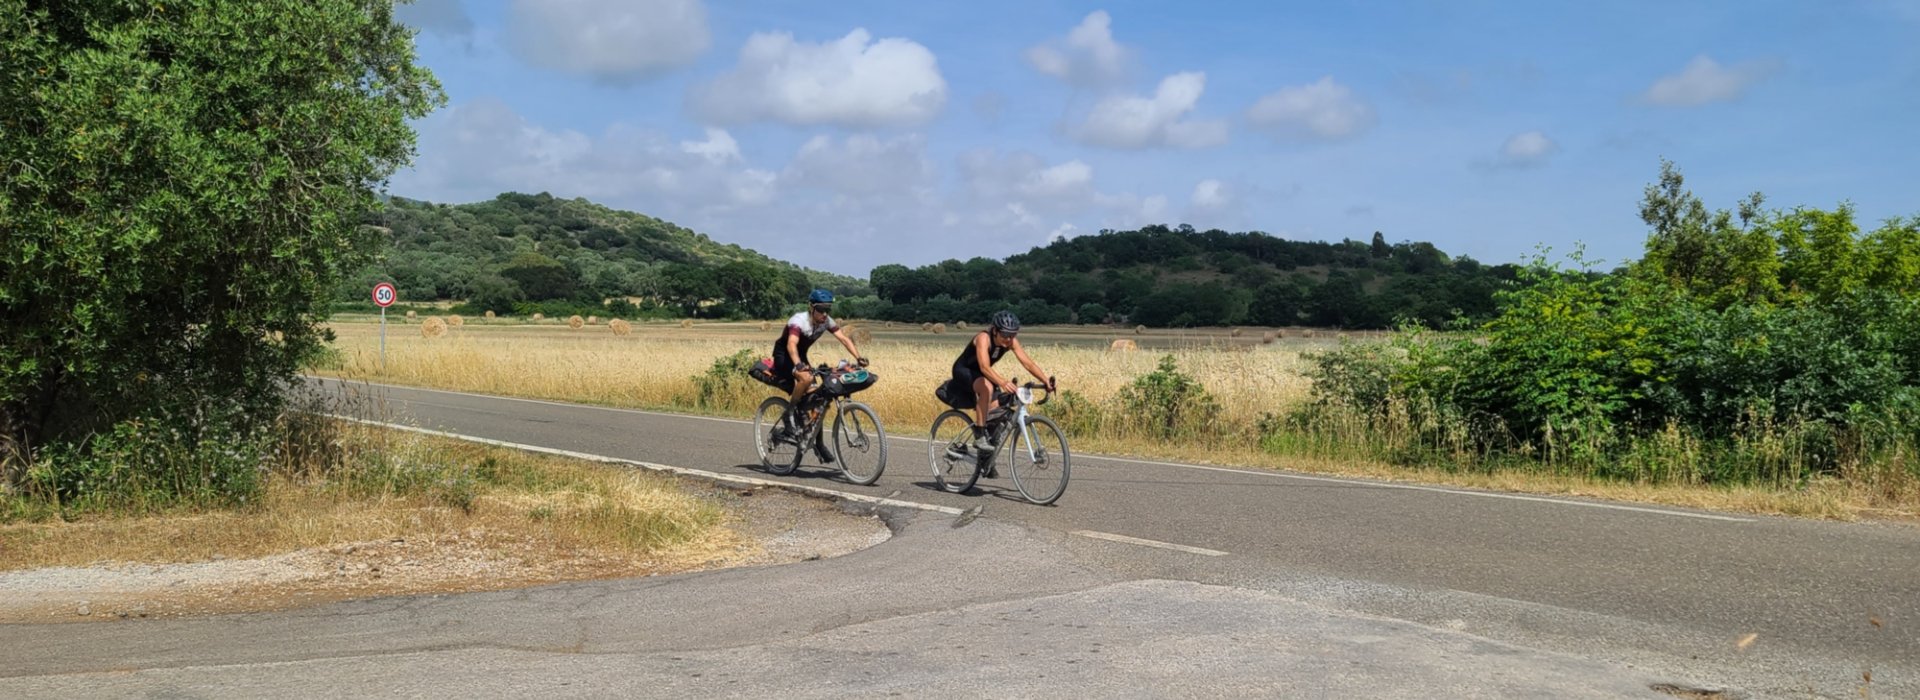 Tour in bici in sei tappe nei luoghi più suggestivi del territorio della Maremma grossetana